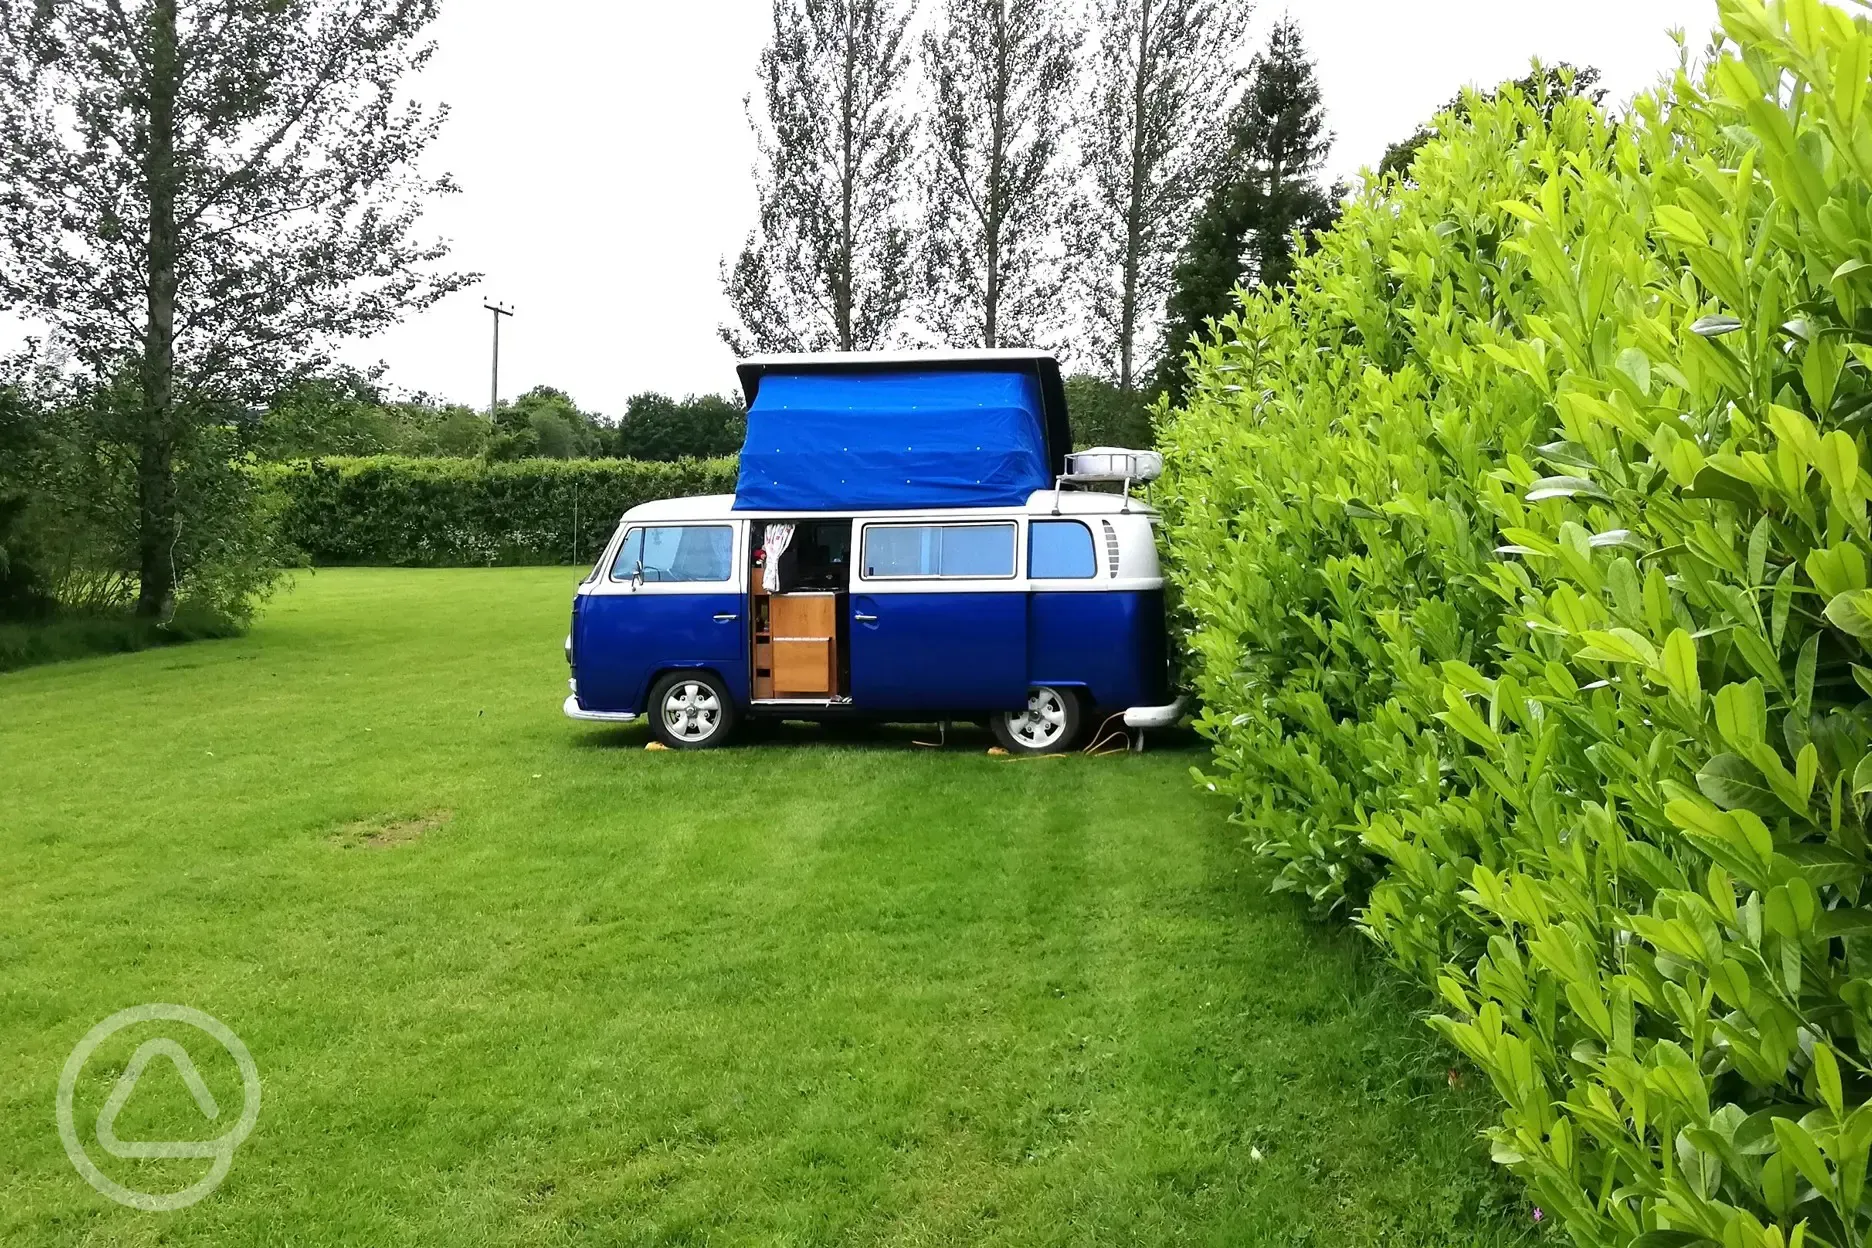 54 year old VW campervan